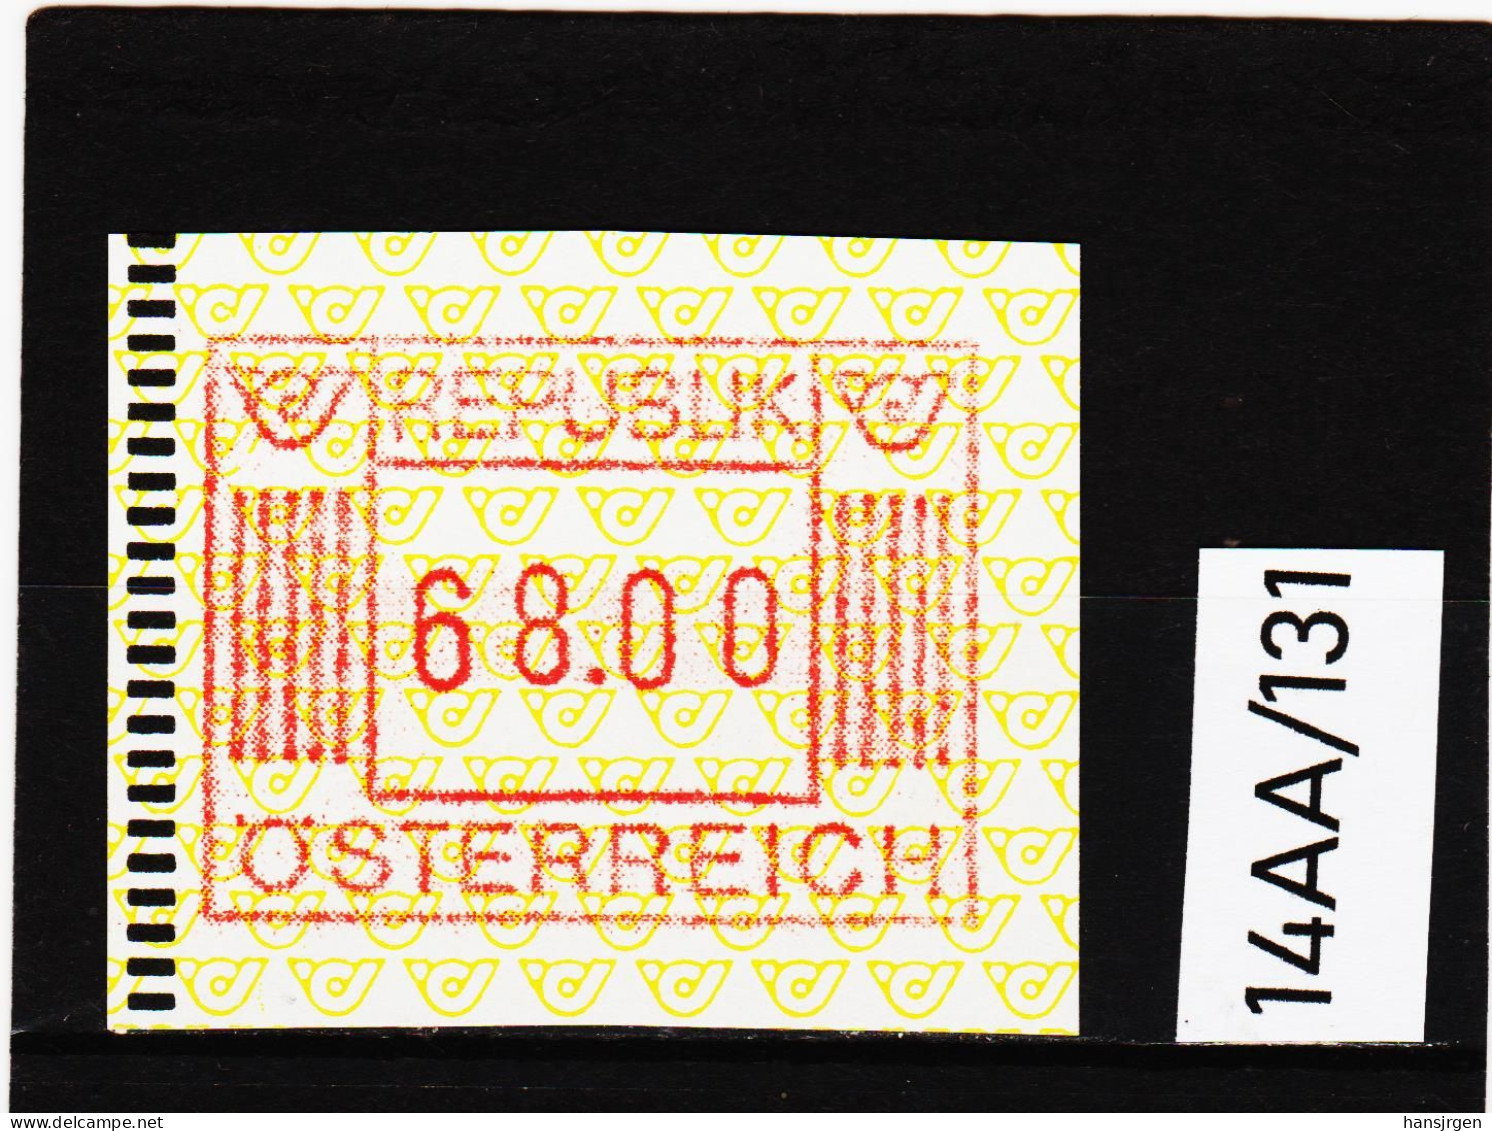 14AA/131  ÖSTERREICH 1983 AUTOMATENMARKEN  A N K  1. AUSGABE  68,00 SCHILLING   ** Postfrisch - Machine Labels [ATM]